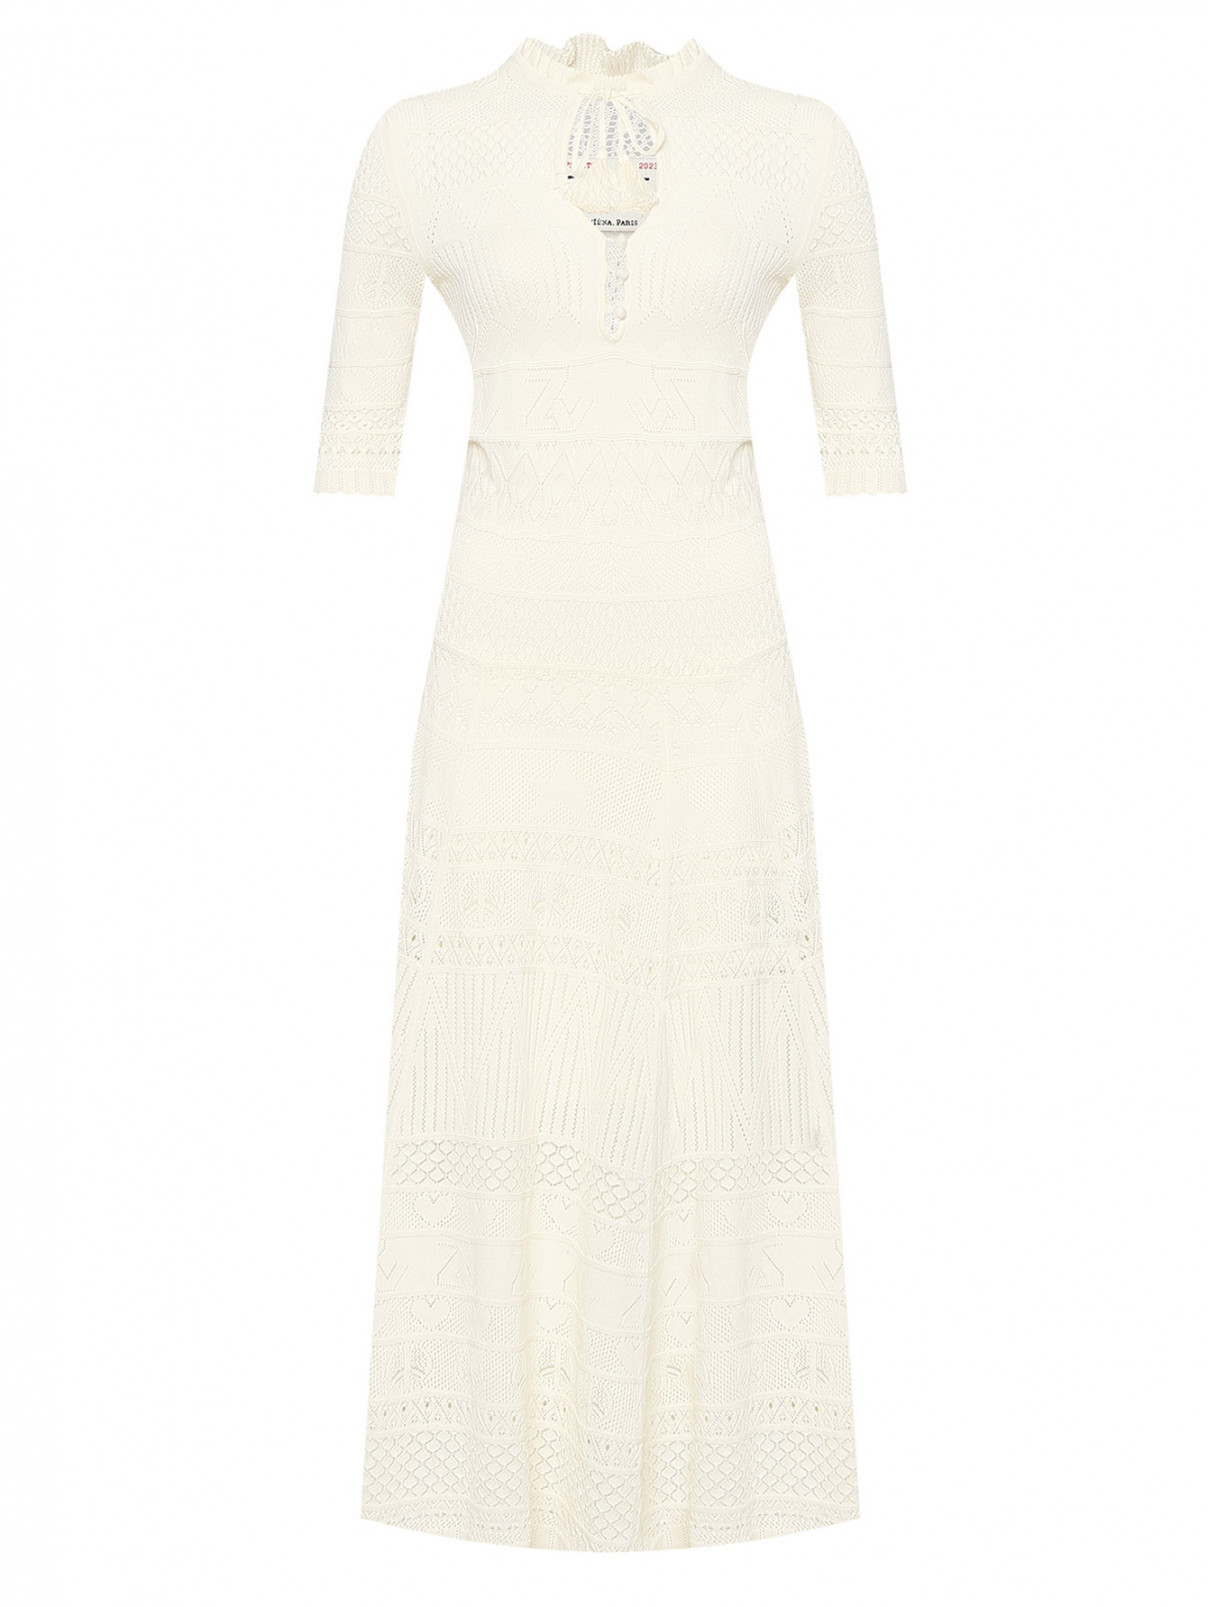 Ажурное платье из хлопка Zadig&Voltaire  –  Общий вид  – Цвет:  Белый